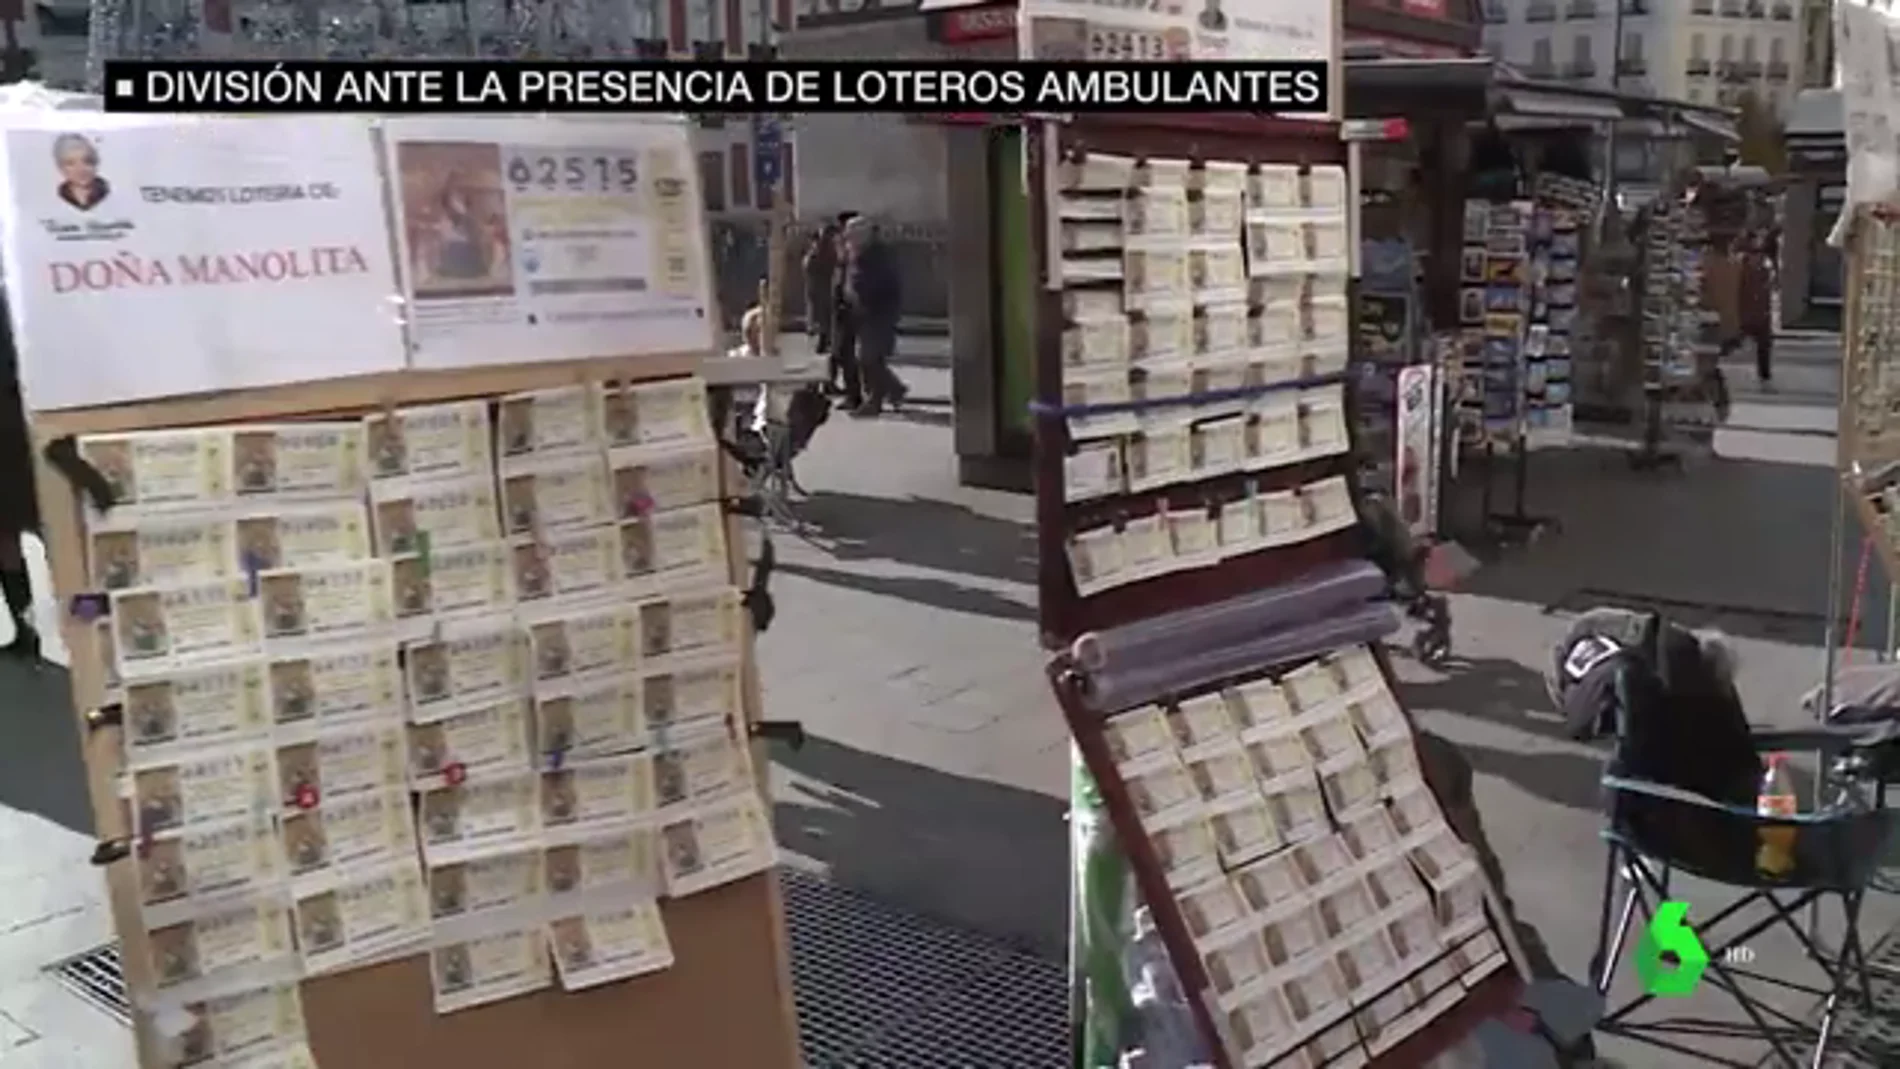 ¿Competencia desleal o tradición?: crece la división entre las administraciones por los loteros ambulantes que venden Lotería de Navidad